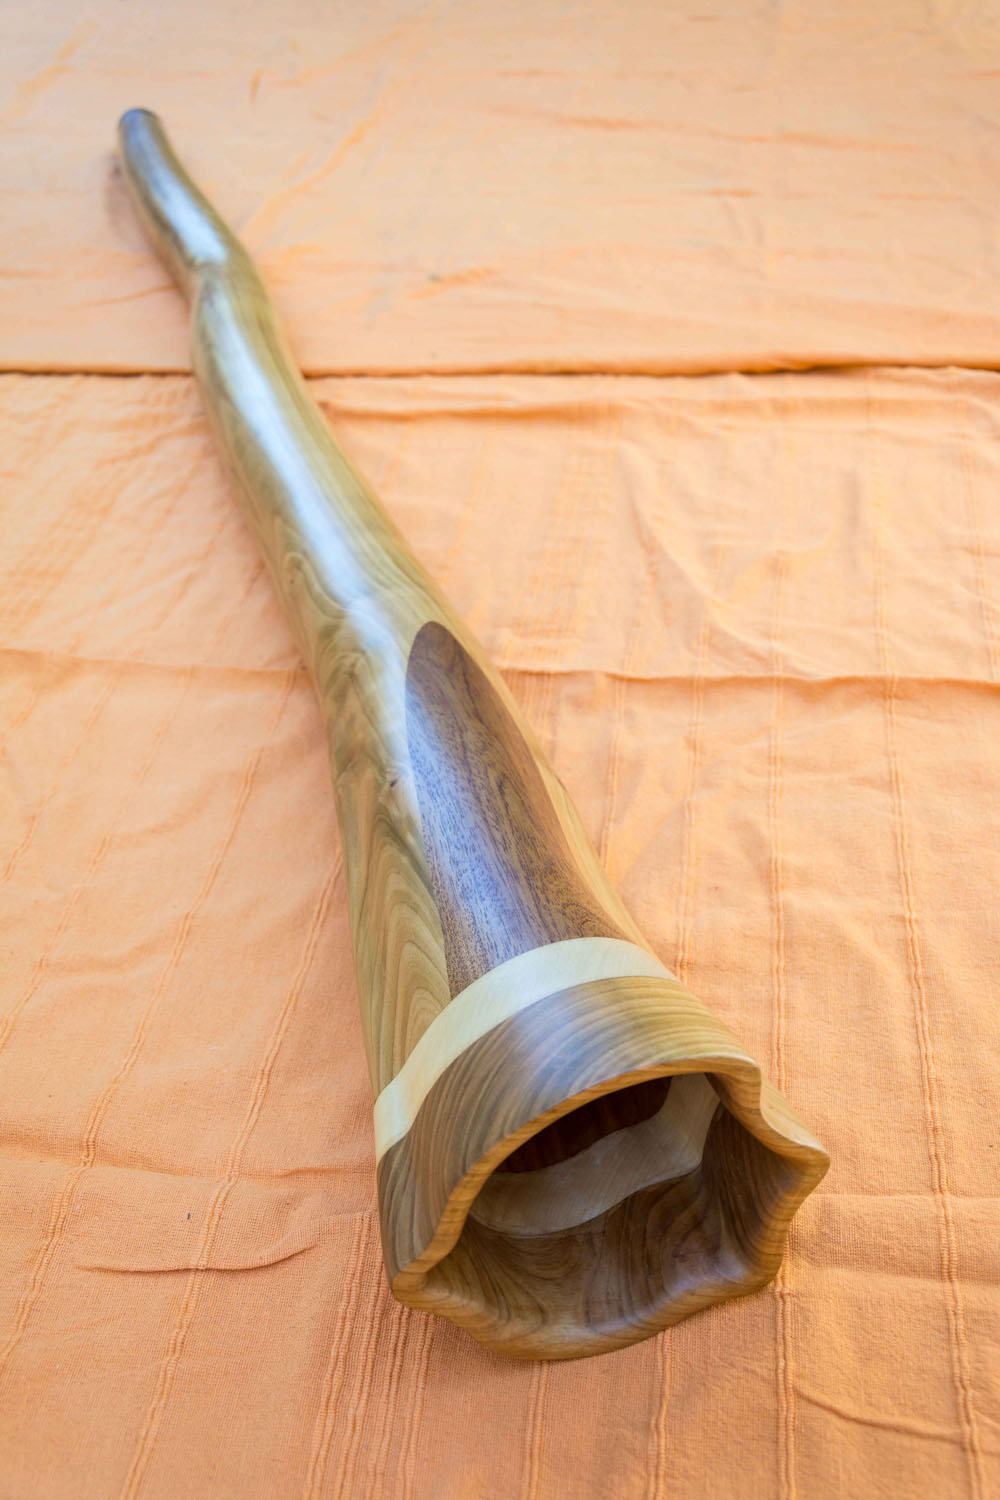 Didgerido nommé Tueka, en Do 432, légèrement courbé, fabriqué en bois de merisier, avec du sipo et érable à la cloche